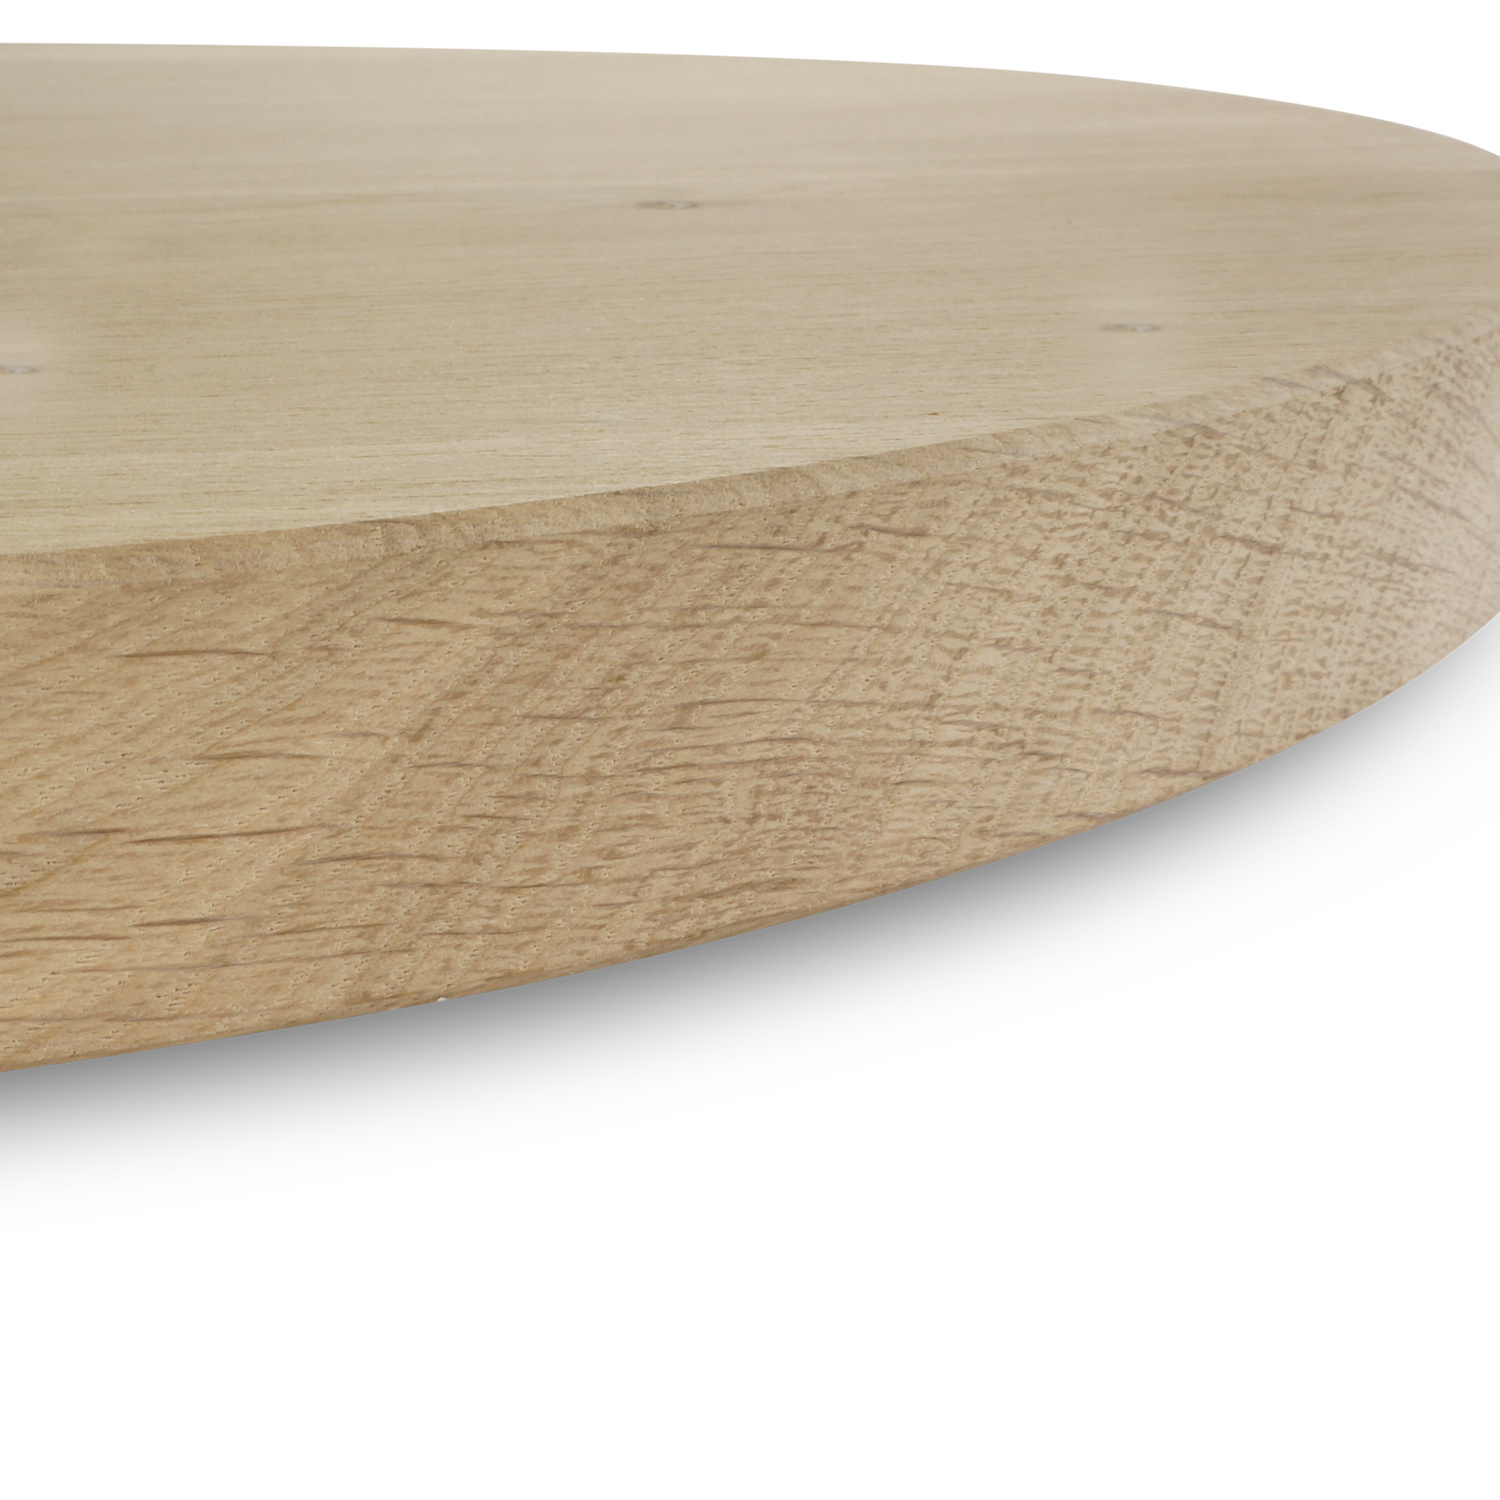  Rond eiken tafelblad op maat - 2,5 cm dik (1-laag) - rustiek Europees eikenhout - verlijmd kd 8-12% - diameter van 30 tot 180 cm